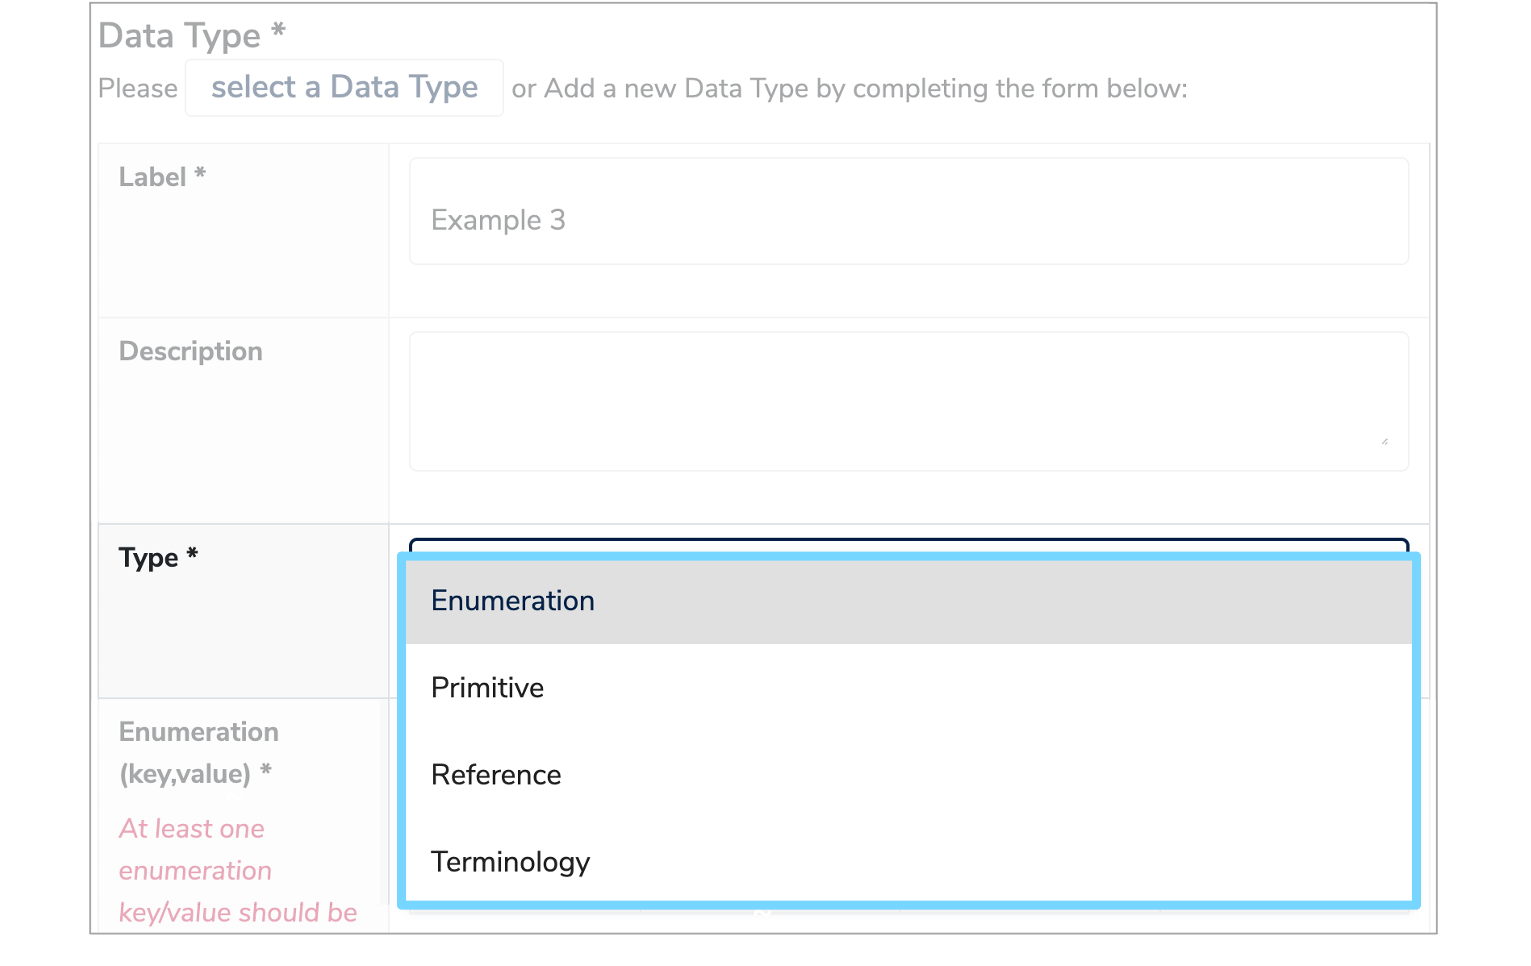 Data Type dropdown menu